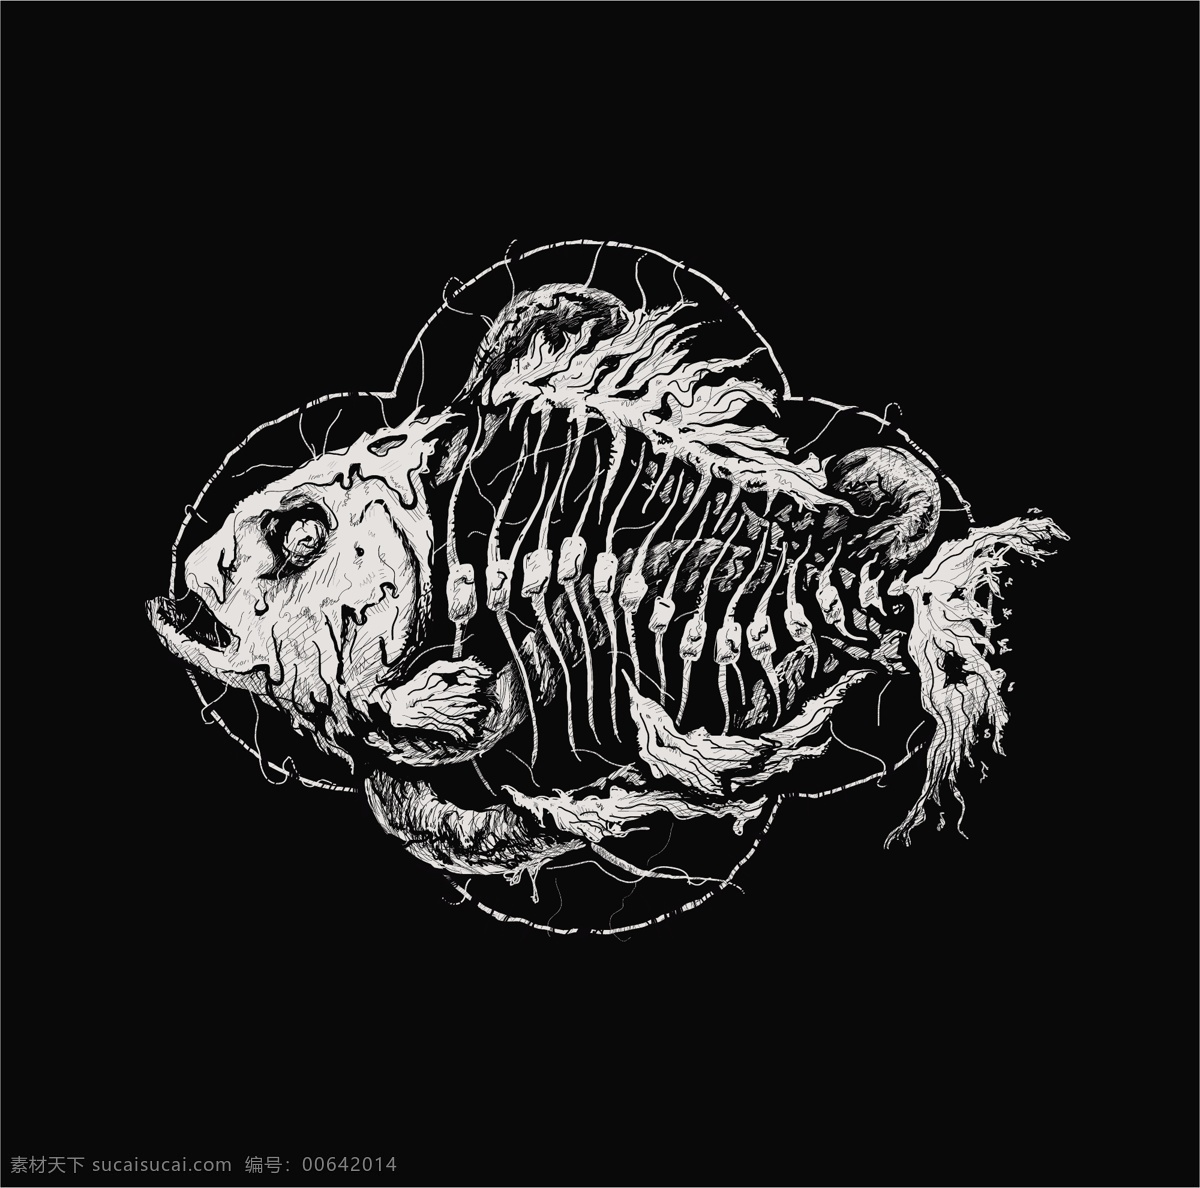 鱼化石 古代鱼 鱼骨头 鱼素描 远古生物 精美 面料 图案 花型 底纹边框 背景底纹